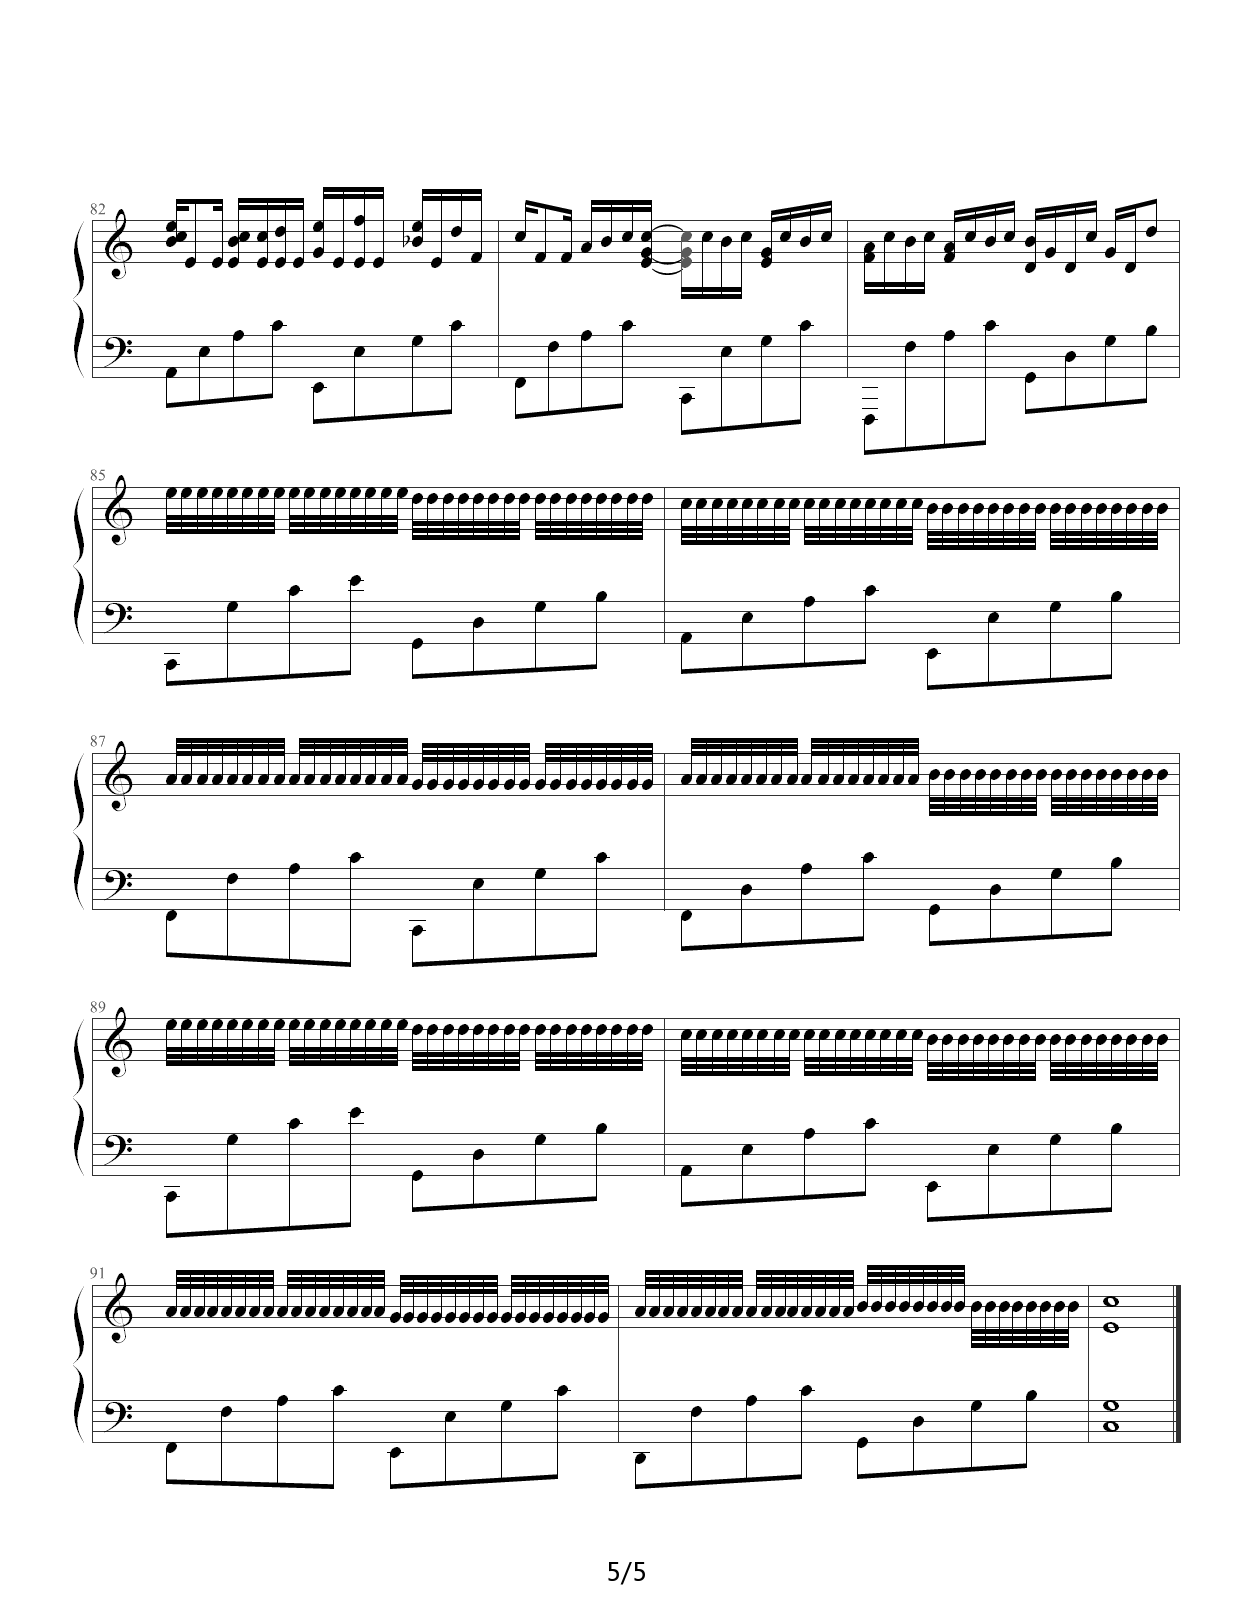 帕赫贝尔的卡农变奏曲-我的野蛮女友双手简谱预览4-钢琴谱文件（五线谱、双手简谱、数字谱、Midi、PDF）免费下载